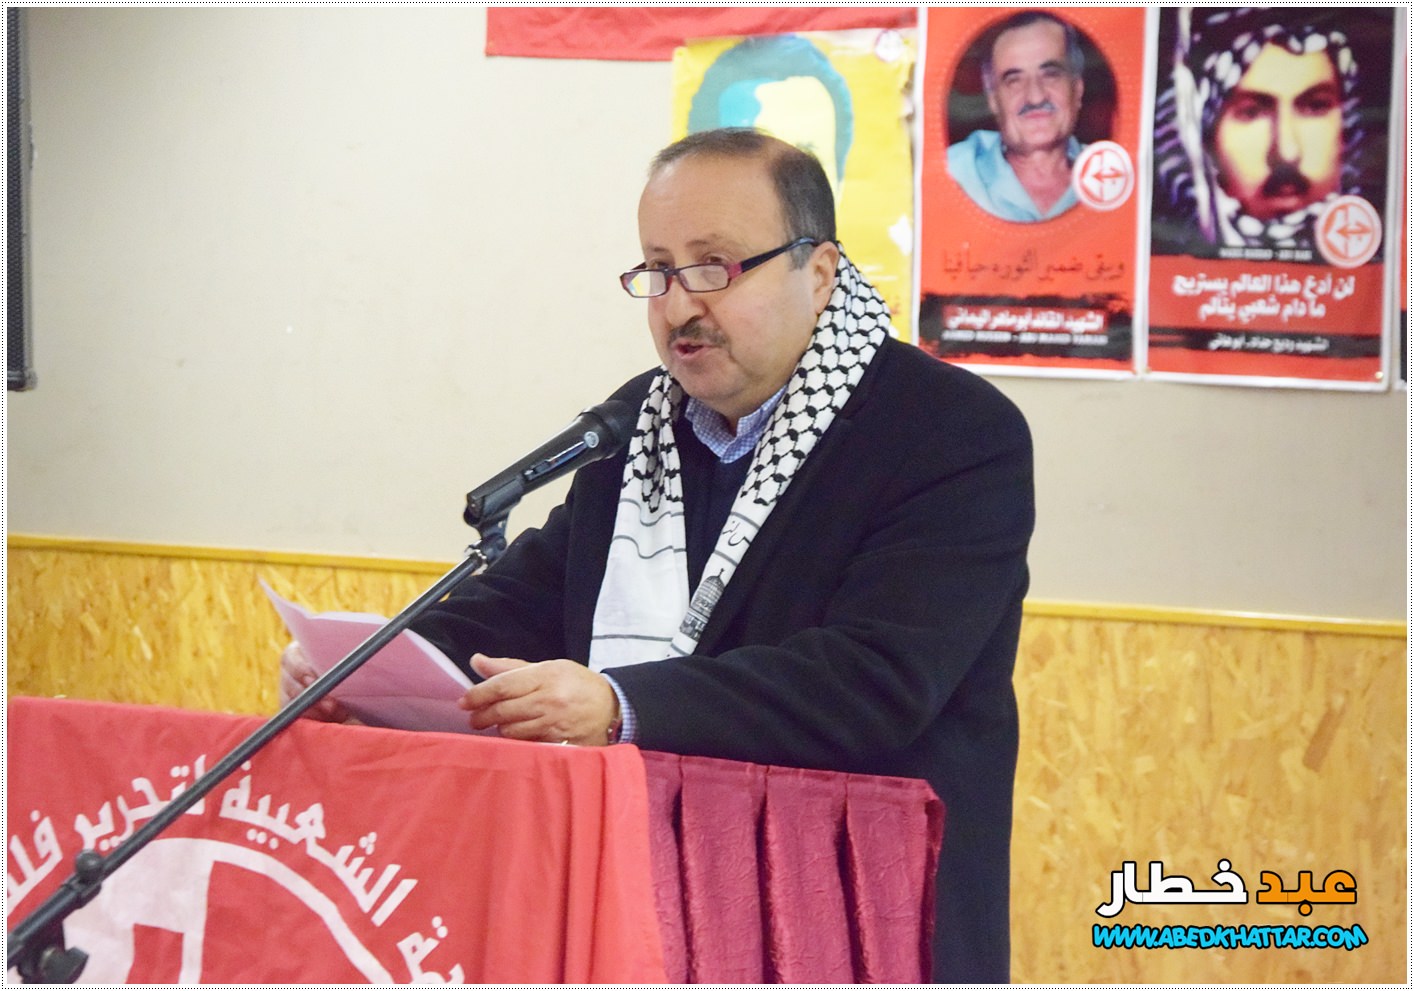 كلمة سفارة دولة فلسطين الاخ عبد الهادي ابو شرخ